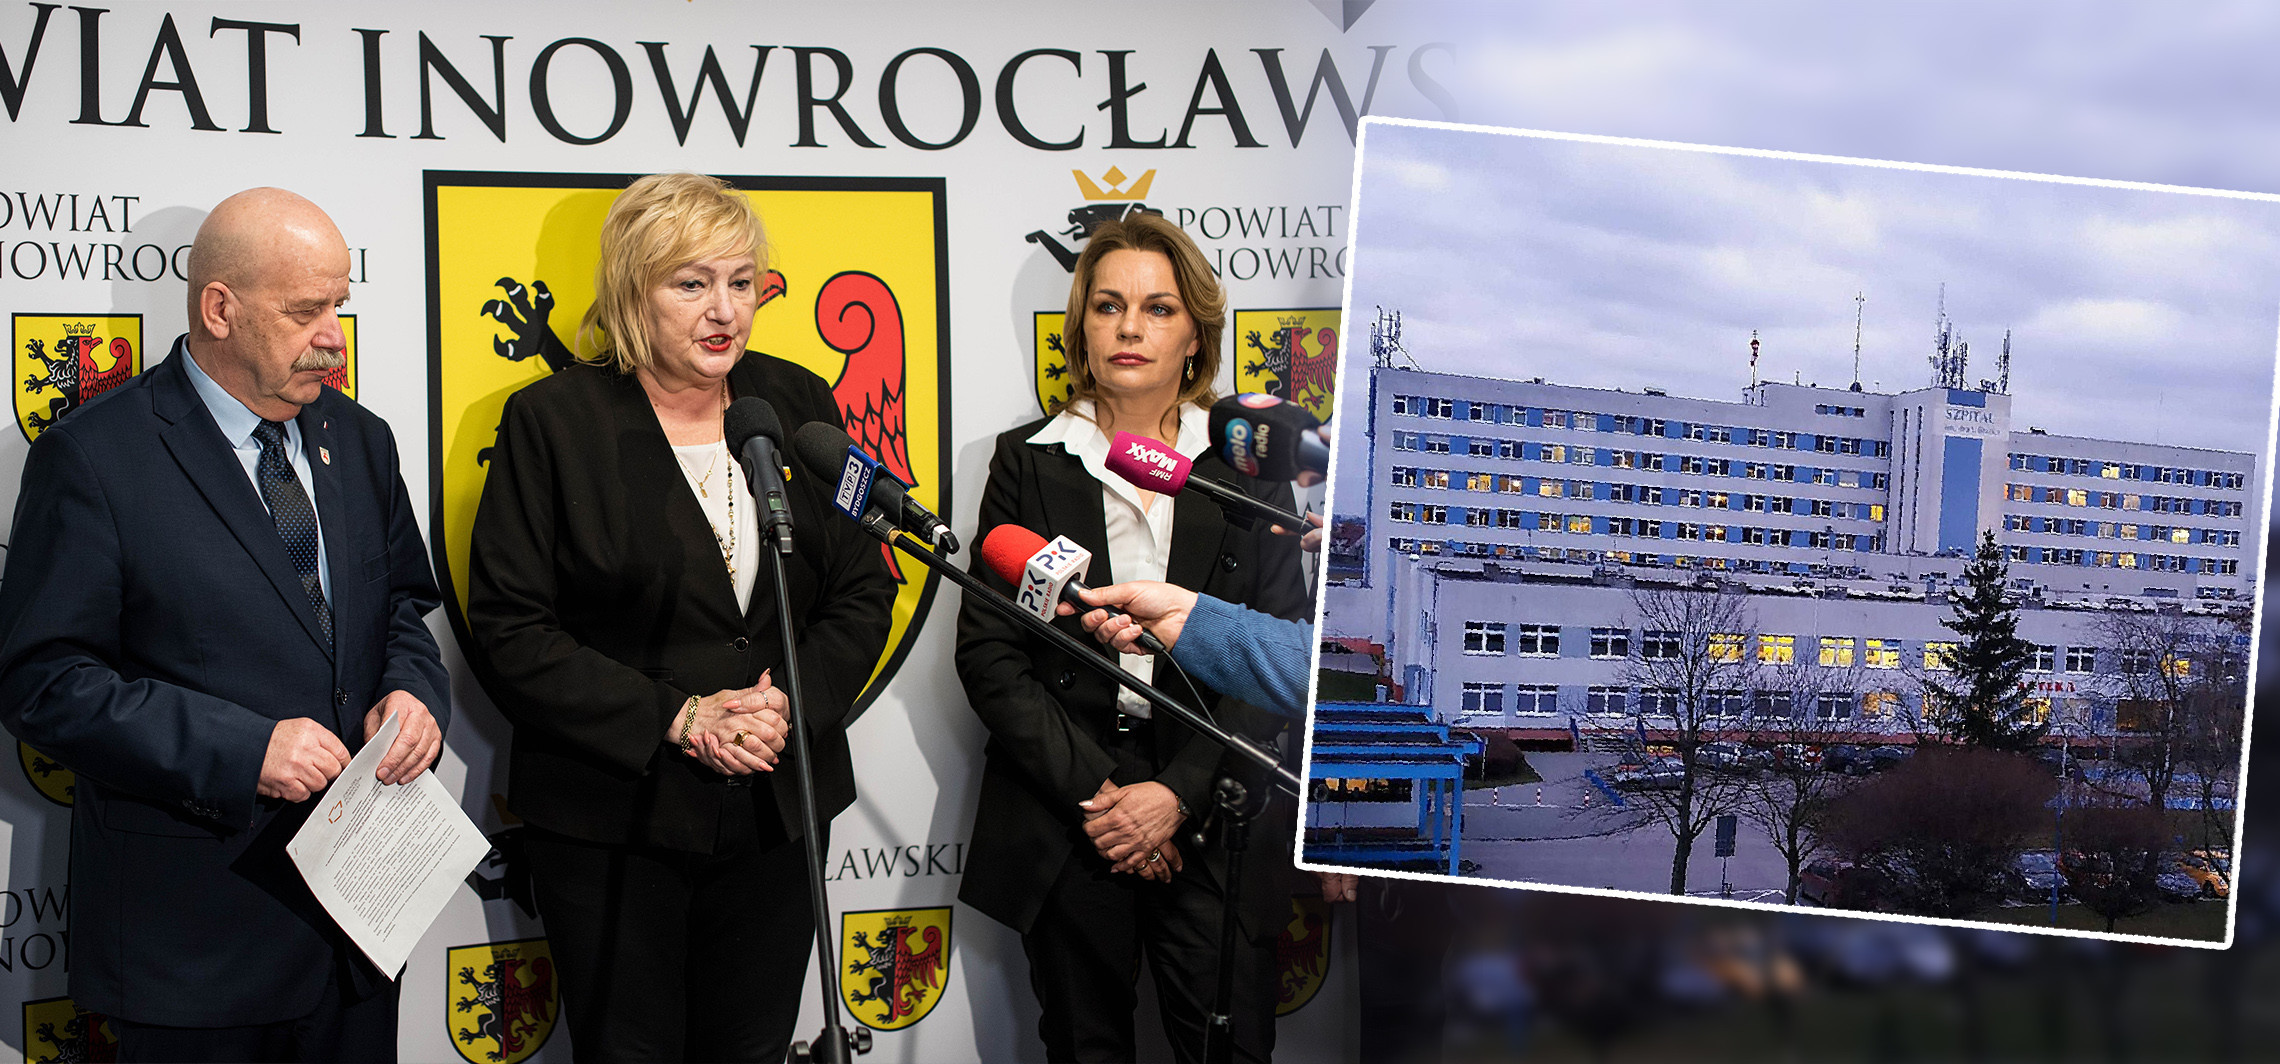 Inowrocław - Pogarsza się sytuacja szpitali powiatowych. Dyskutowano o tym w Inowrocławiu